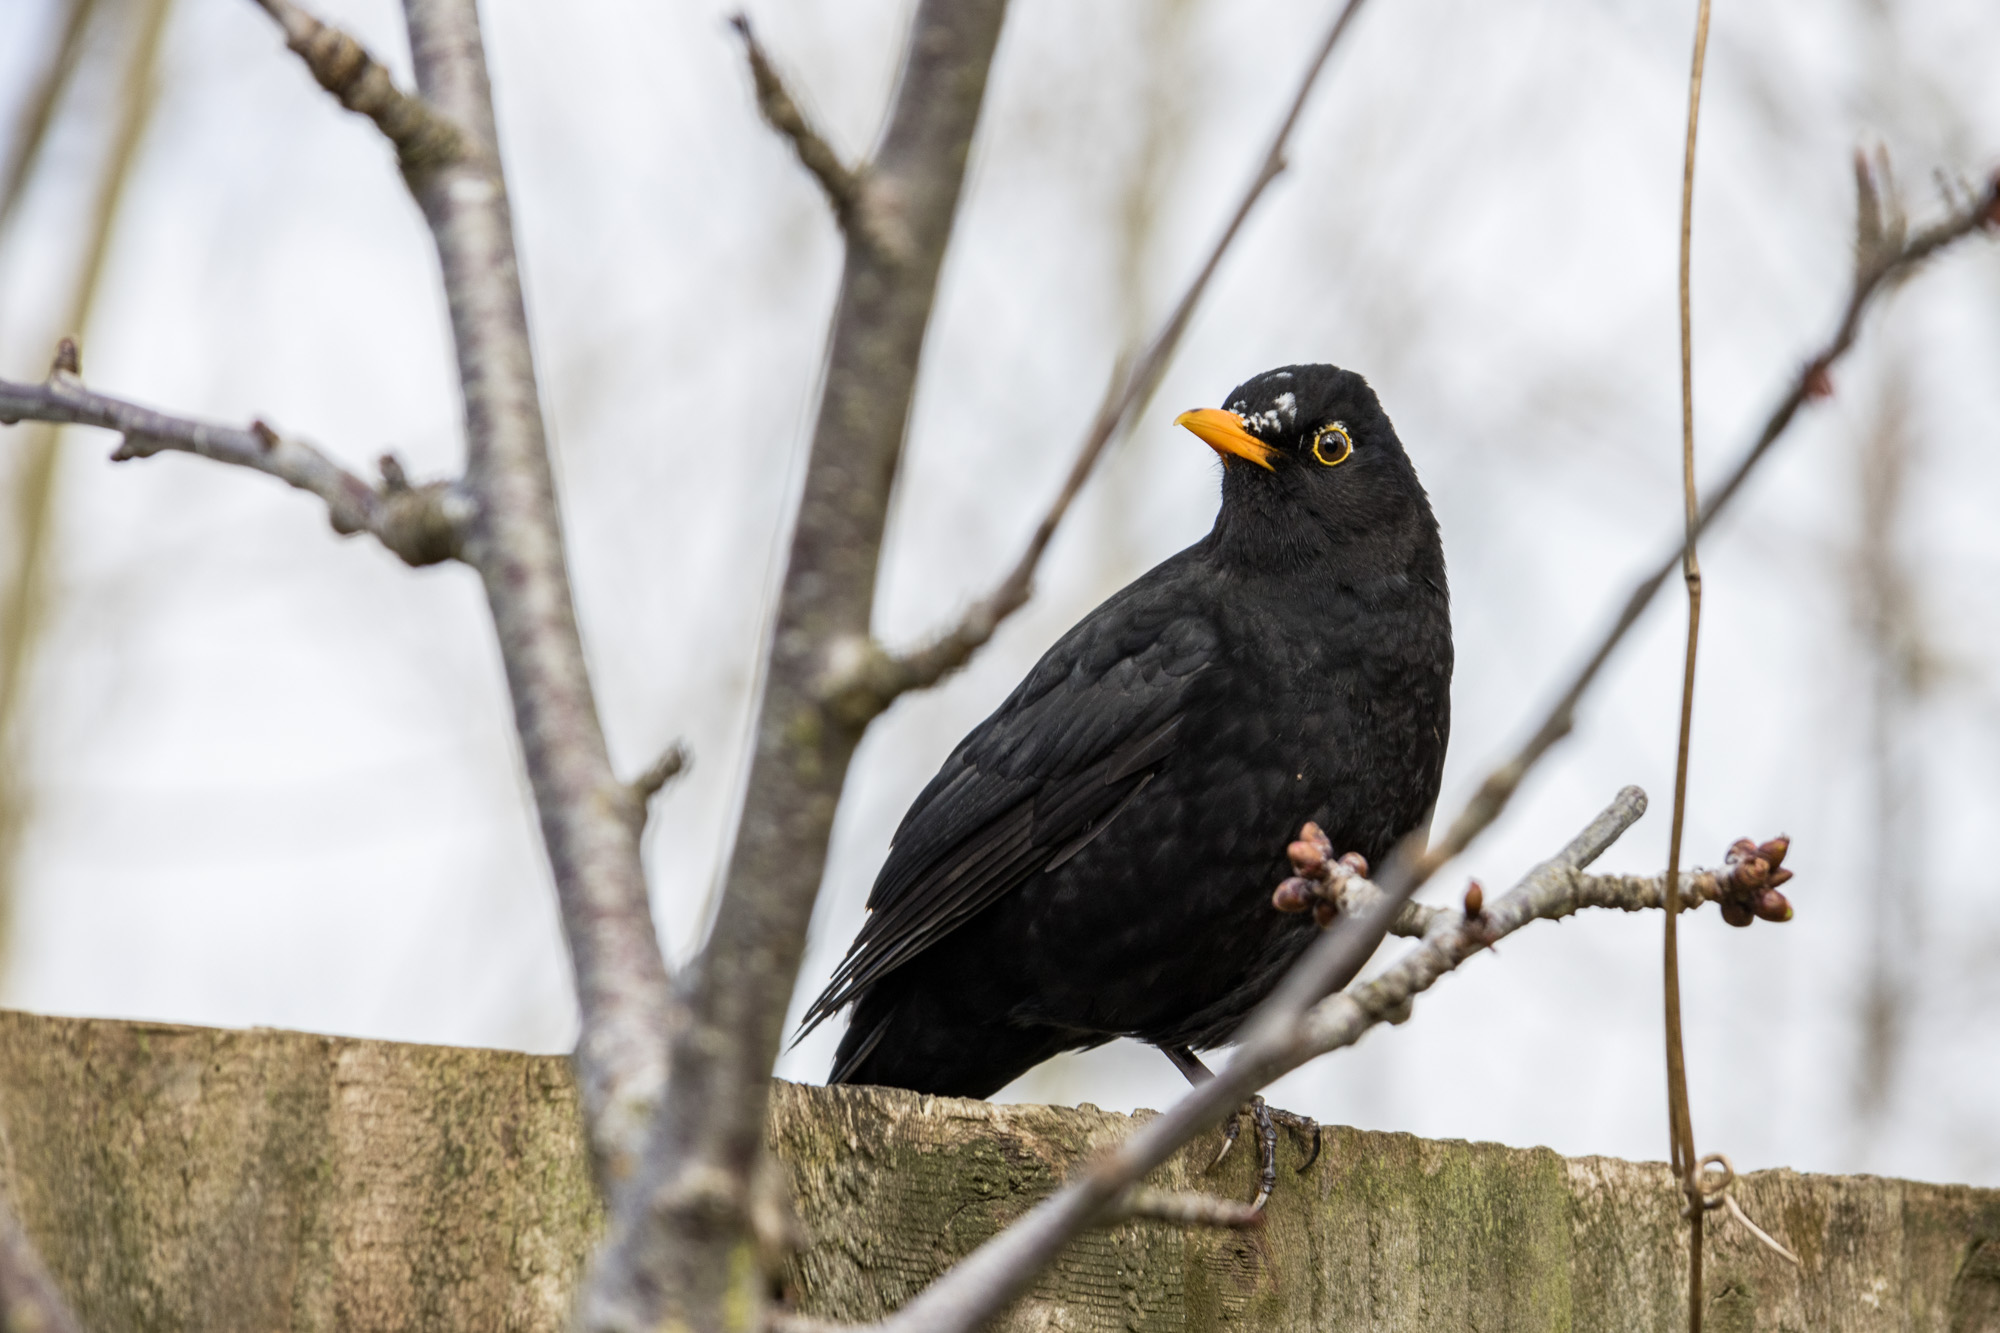 A blackbird sitting on a fence